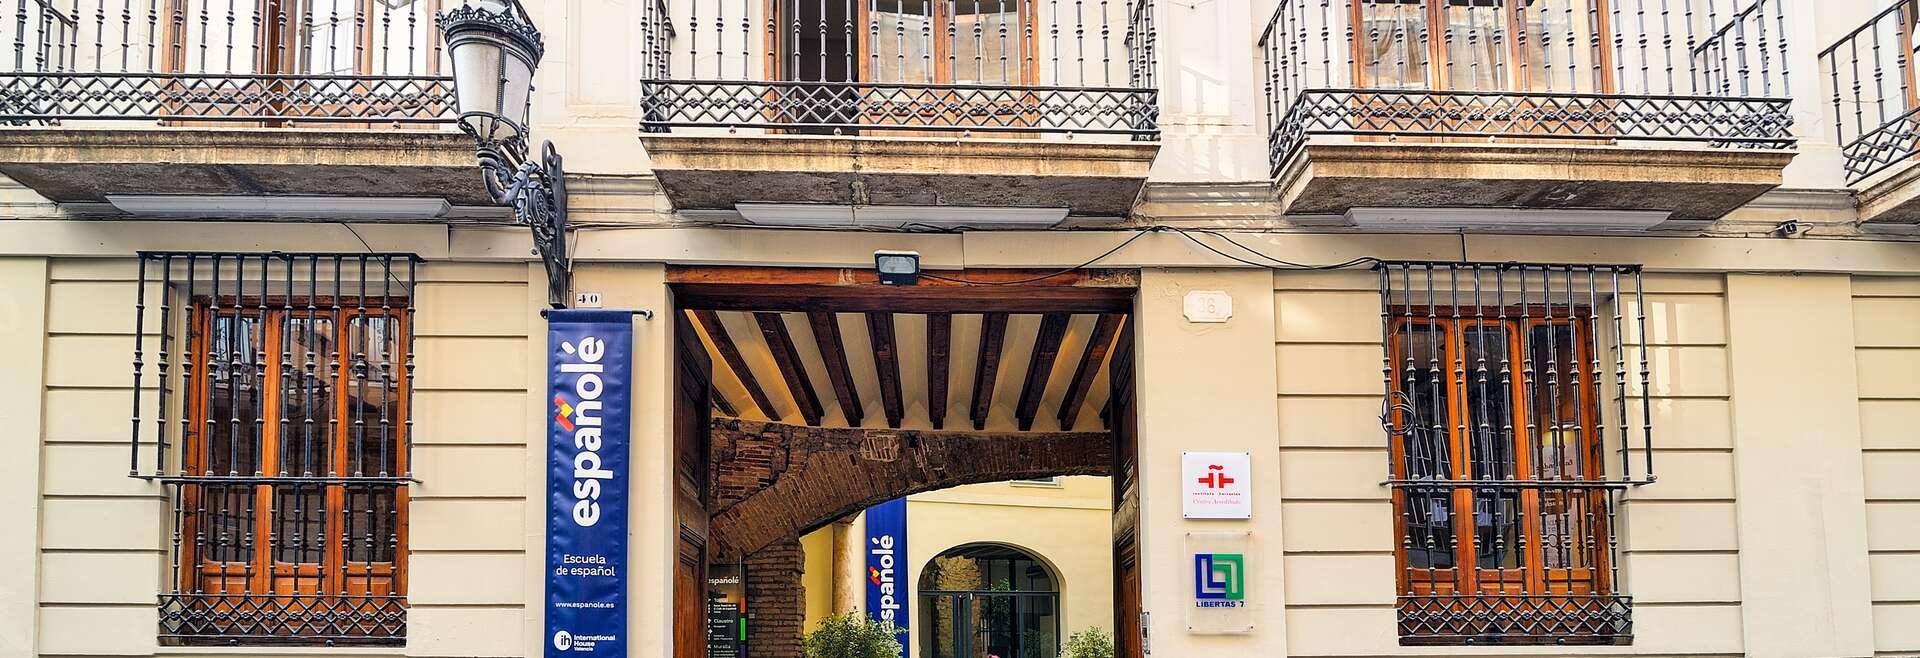 Séjour linguistique Espagne, Valence - Espagnole International House - Ecole